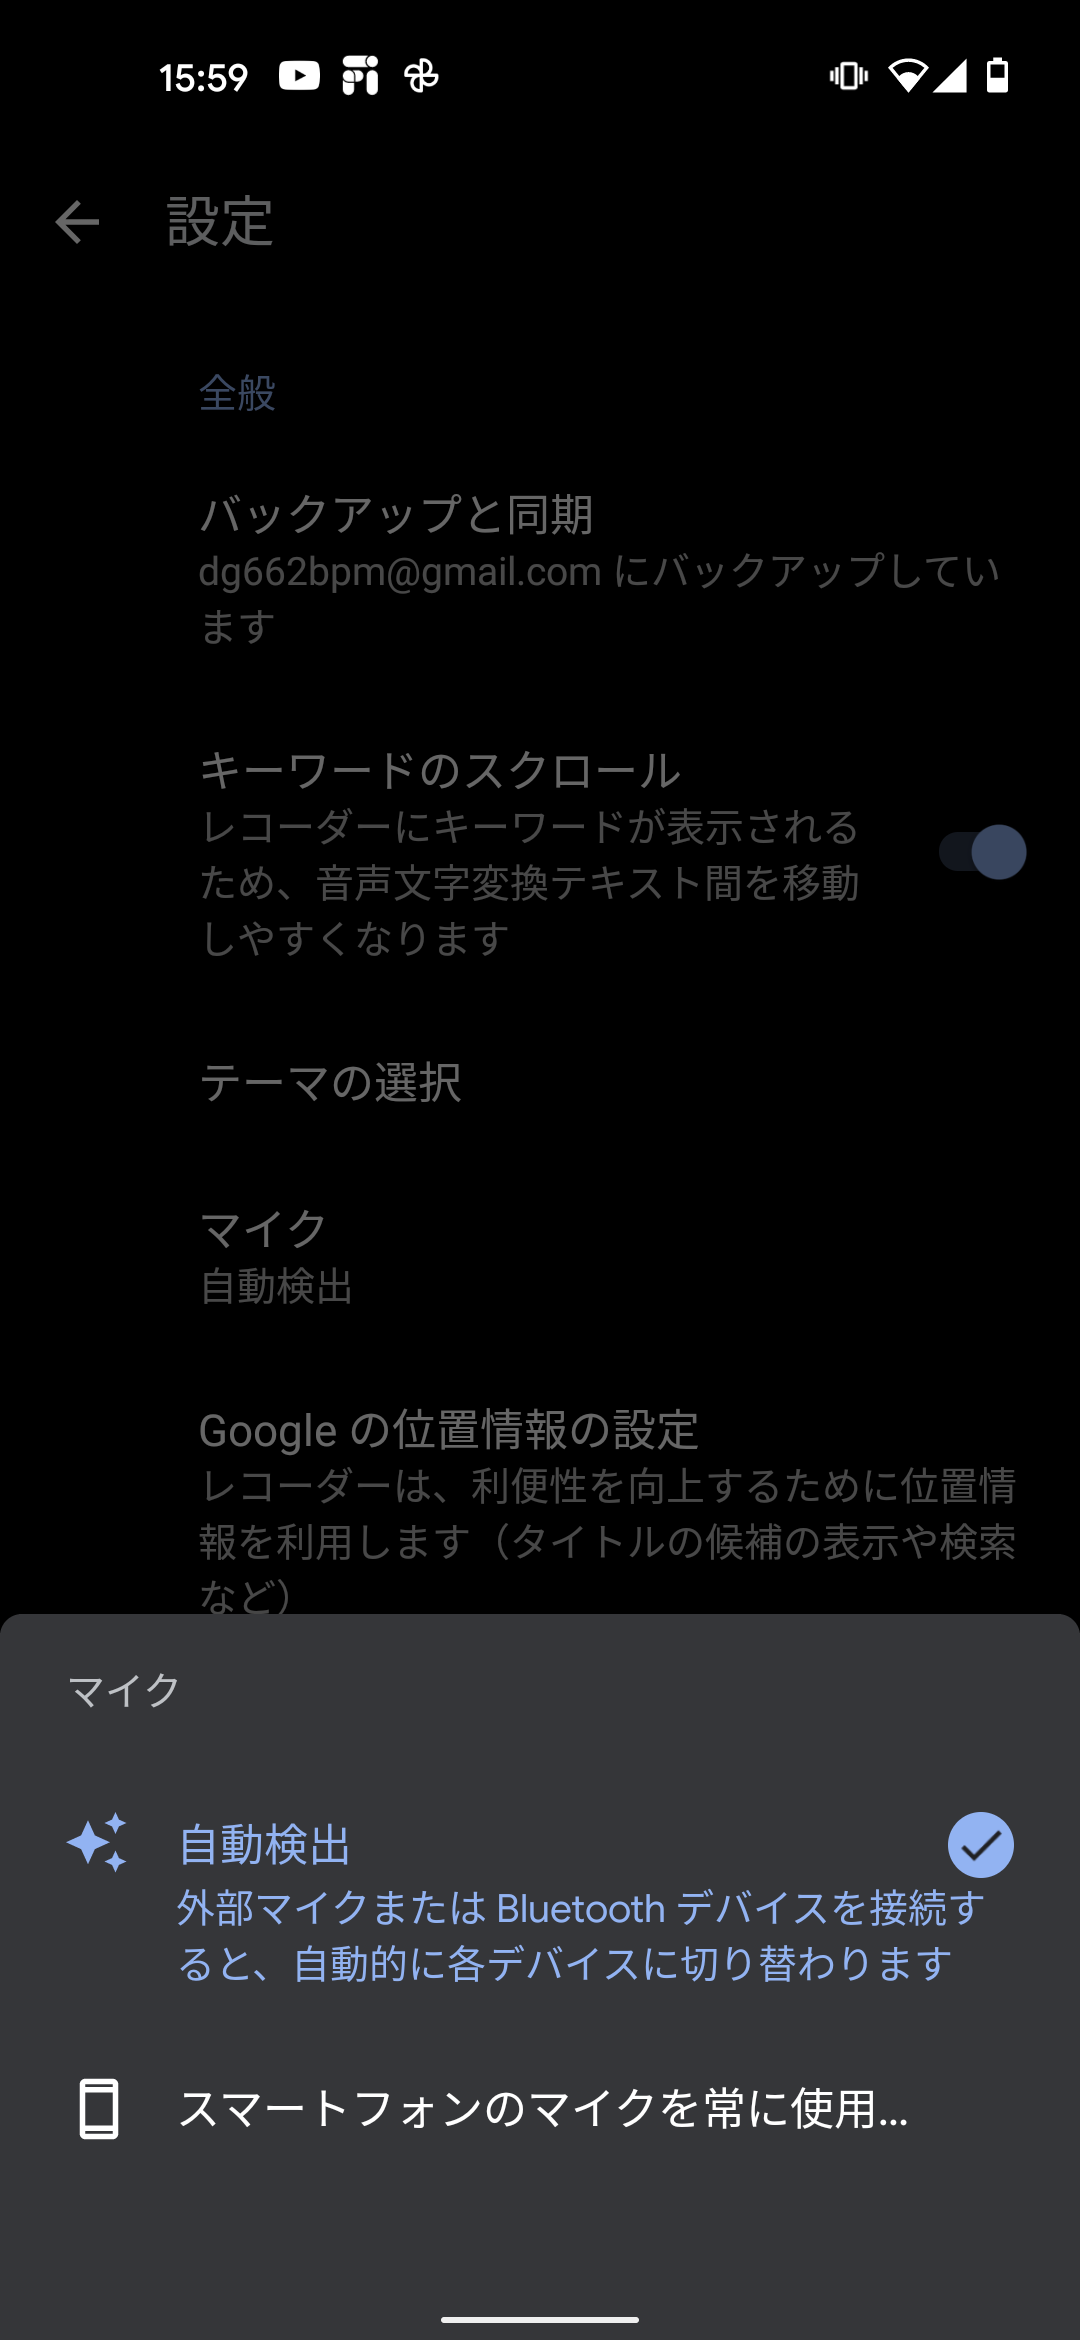 スマートフォン7機種で外部マイクの接続テストしたら意外な結果に 旅人目線のデジタルレポ 中山智 Engadget 日本版